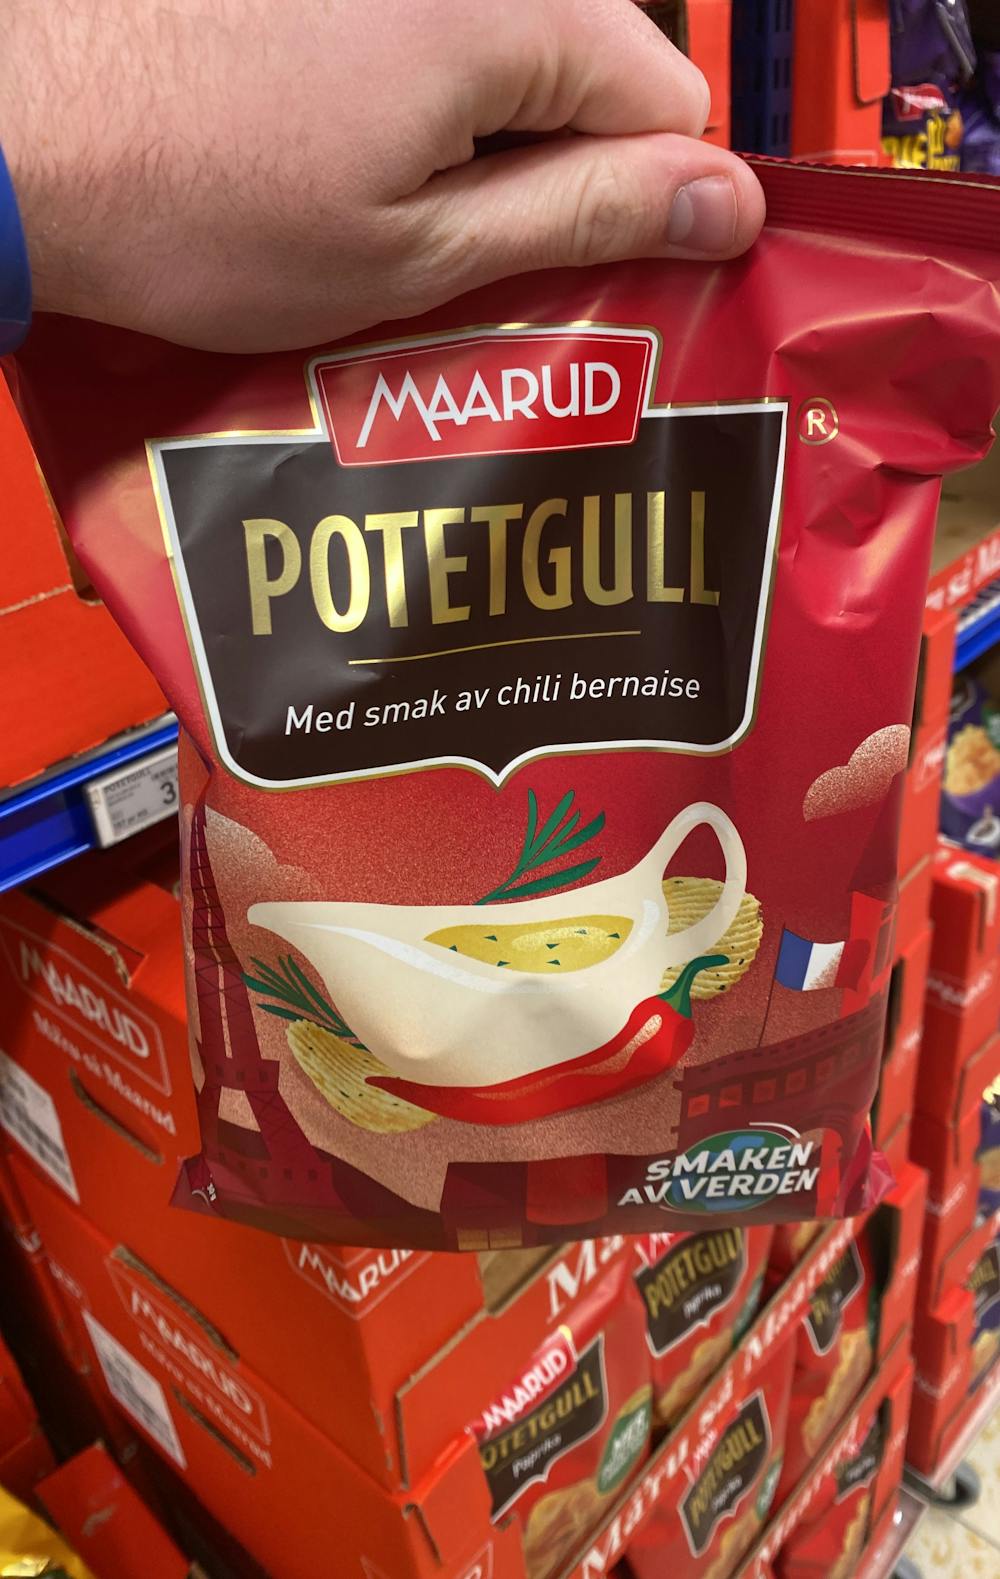 Potetgull med smak av chili bernaise, Maarud